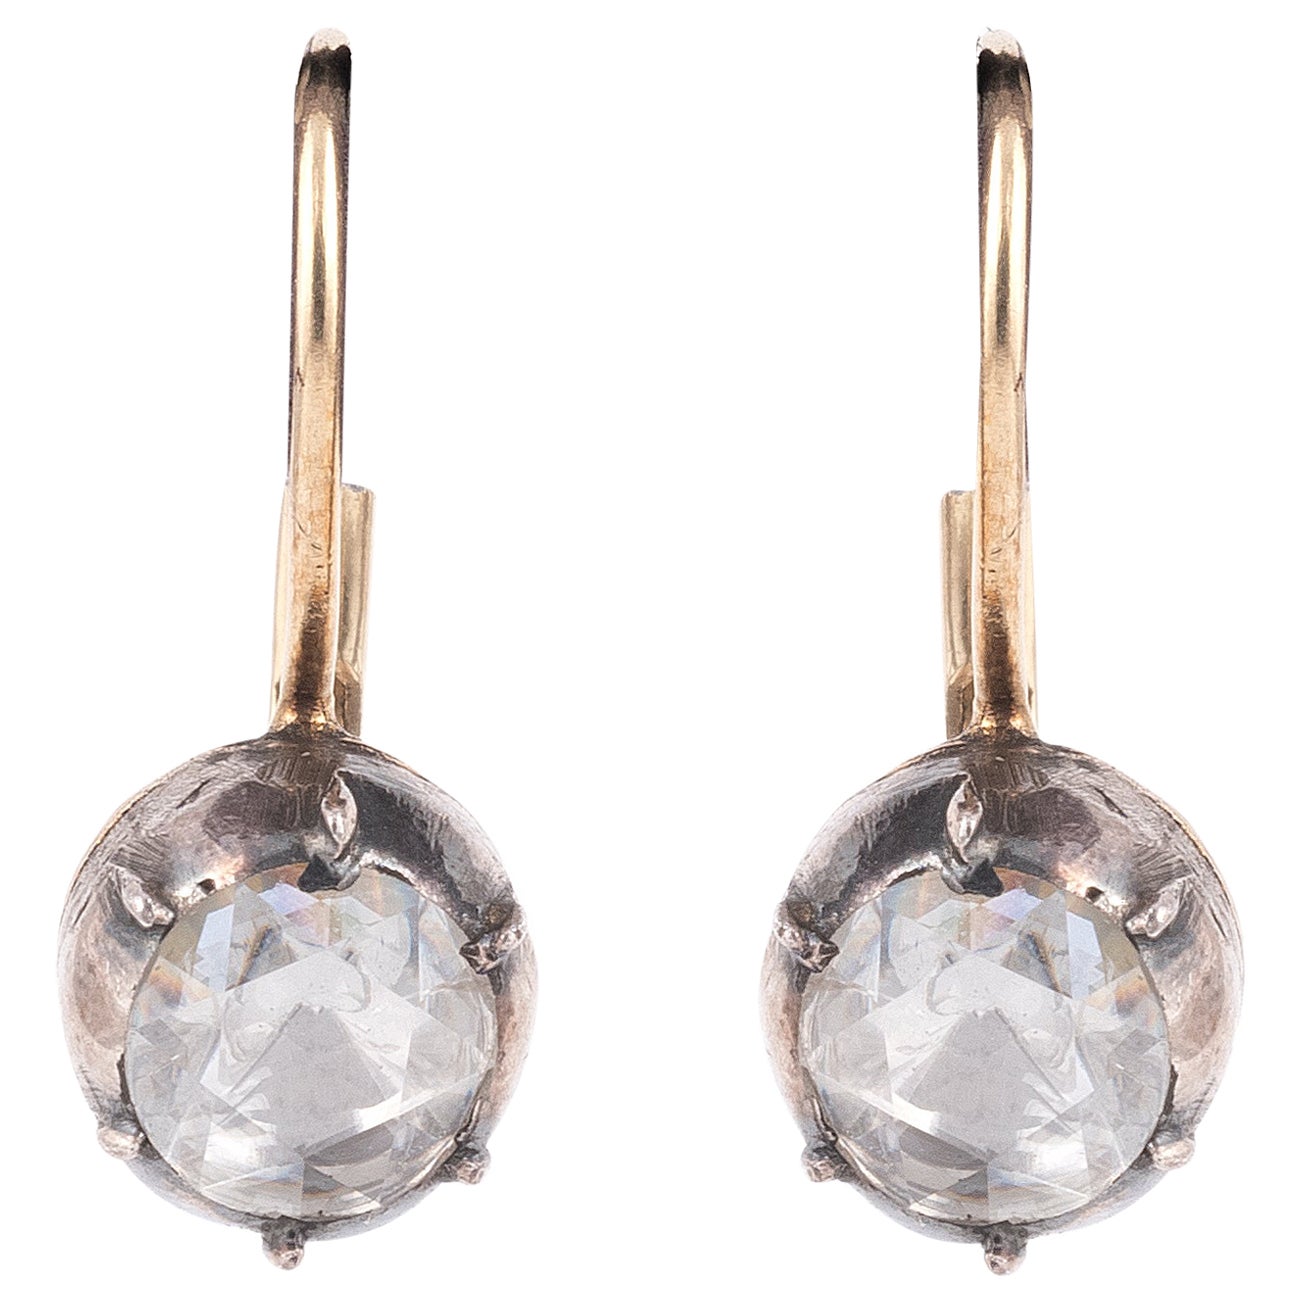 Ein Paar Ohrringe aus Silber und 18-karätigem Gelbgold mit verblendeten Diamanten im Rosenschliff.
Bruttogewicht : 3,21 gr. (System mit durchstochenen Ohren)
Diamantdurchmesser: 5,20 (0,50 Karat pro Stück). 
